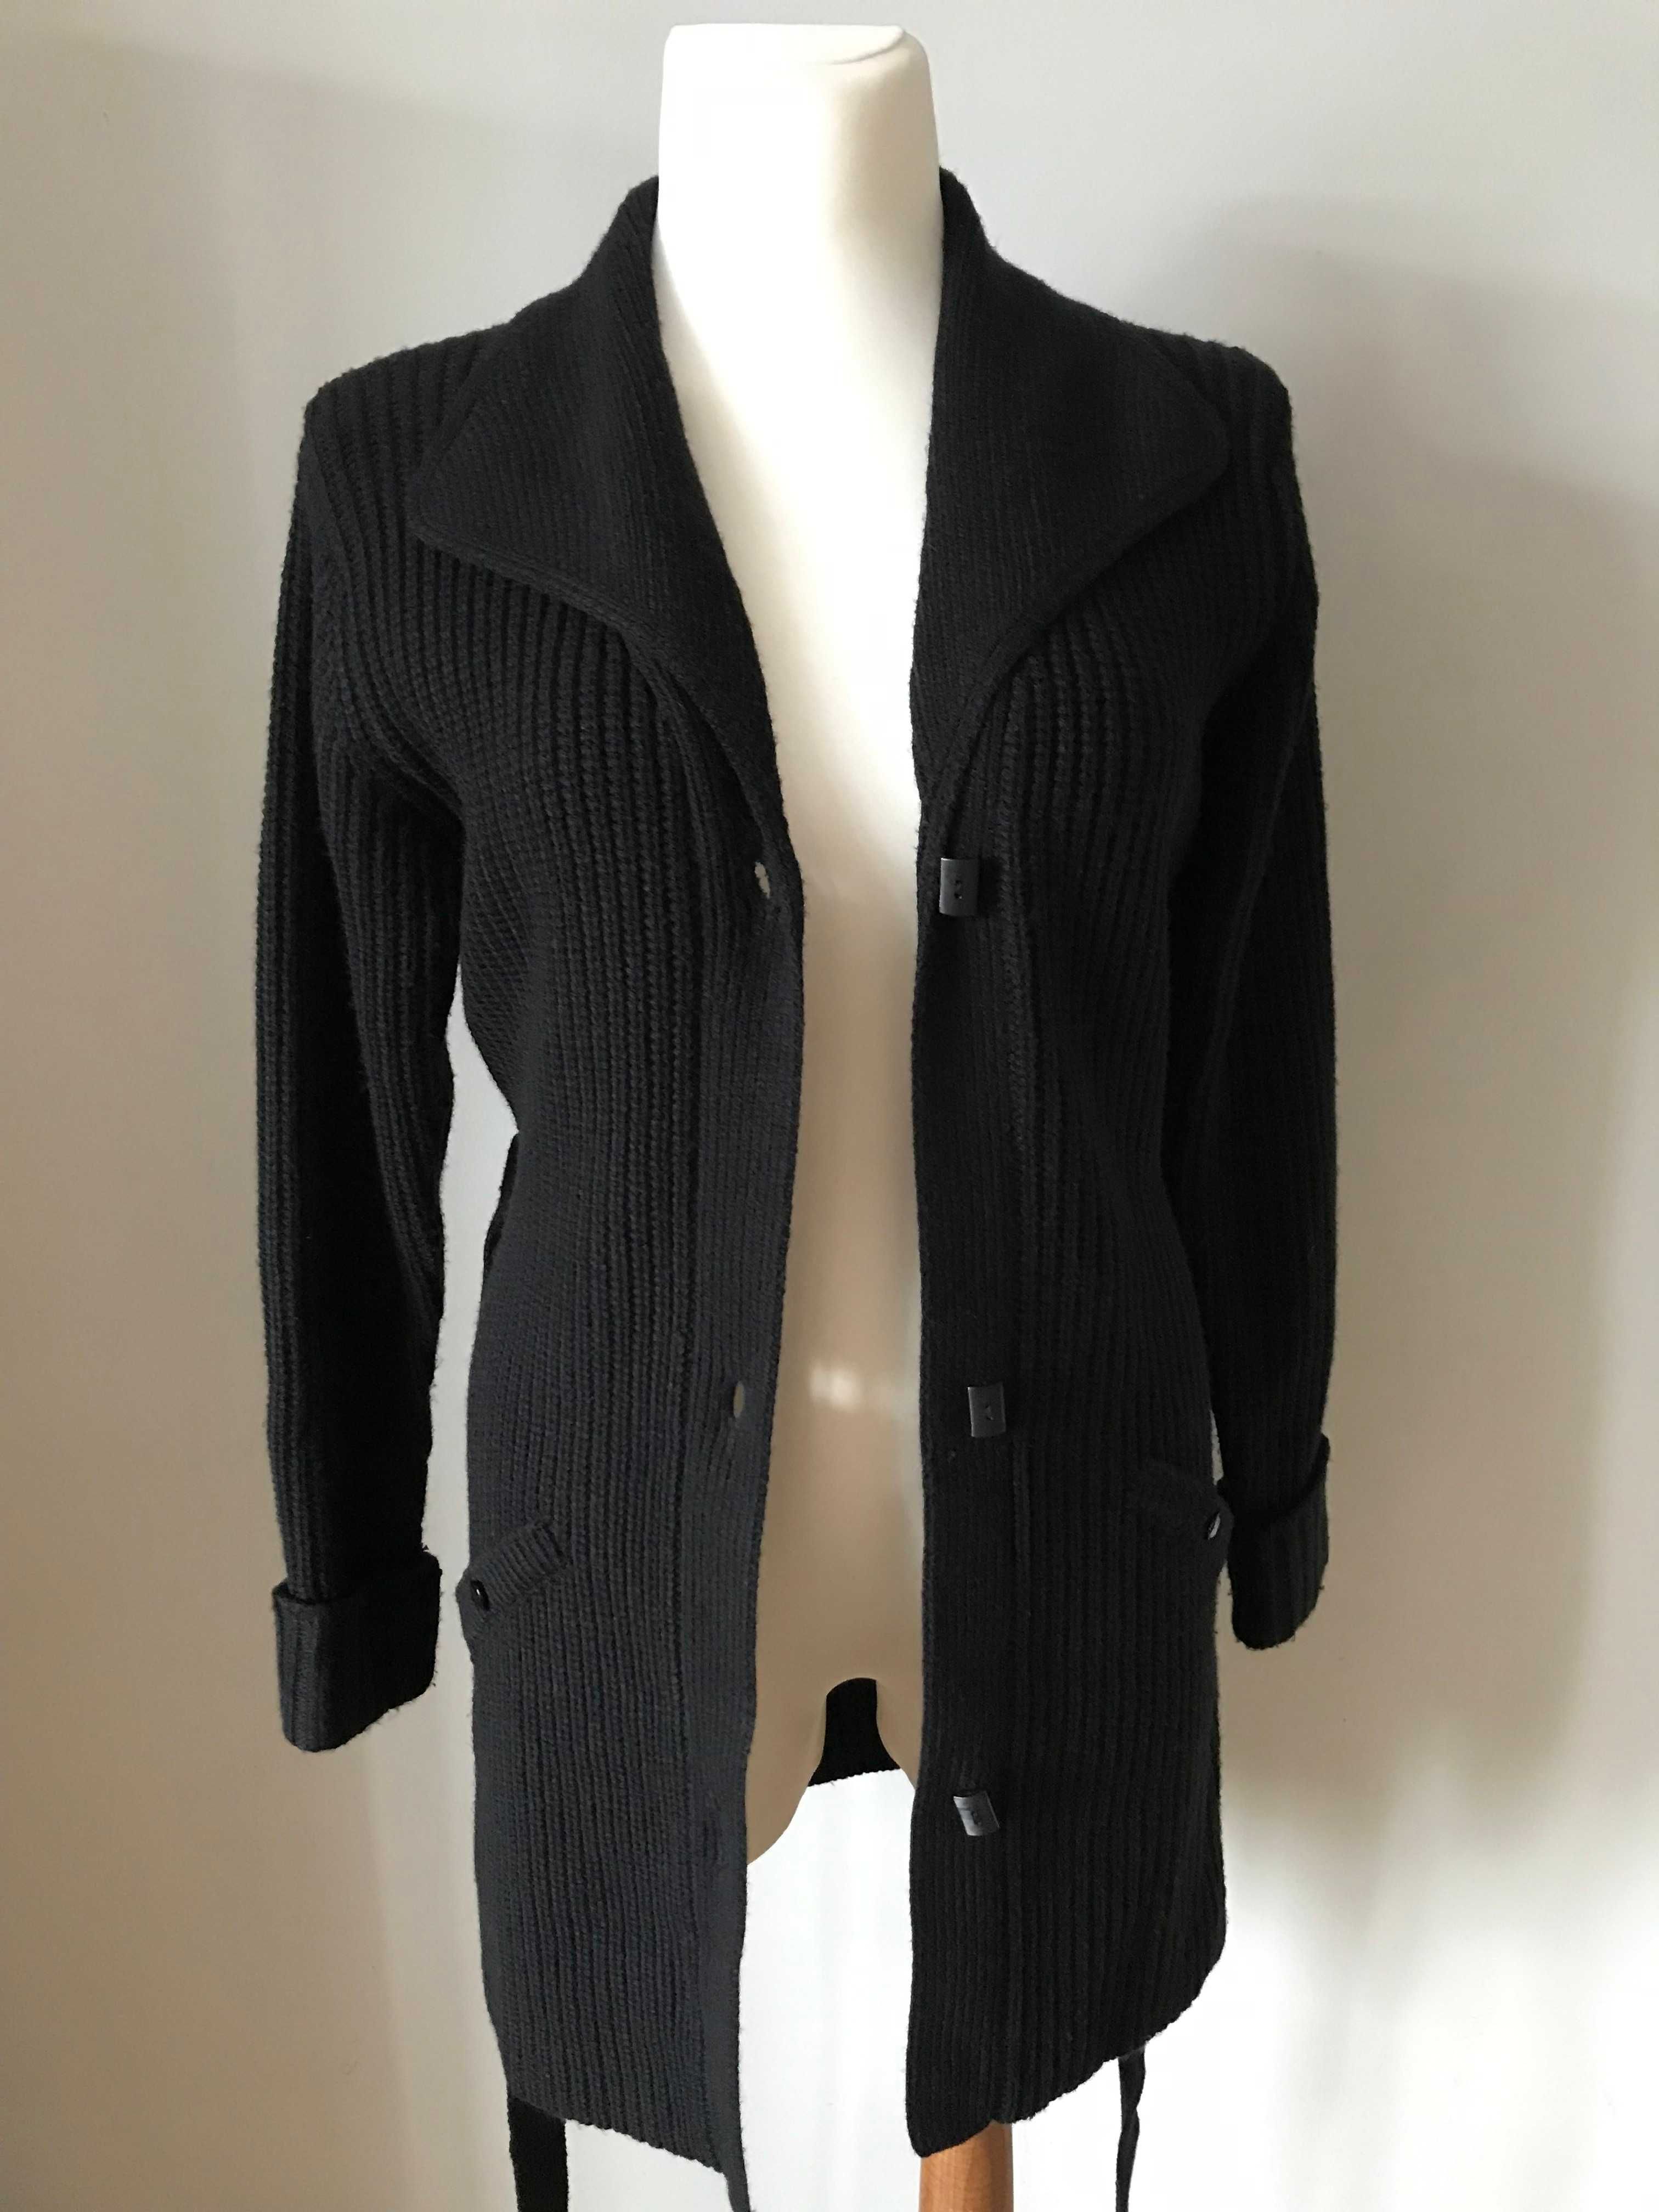 Długi czarny sweter zapinany vintage retro  r. 38 / M wiązany kardigan